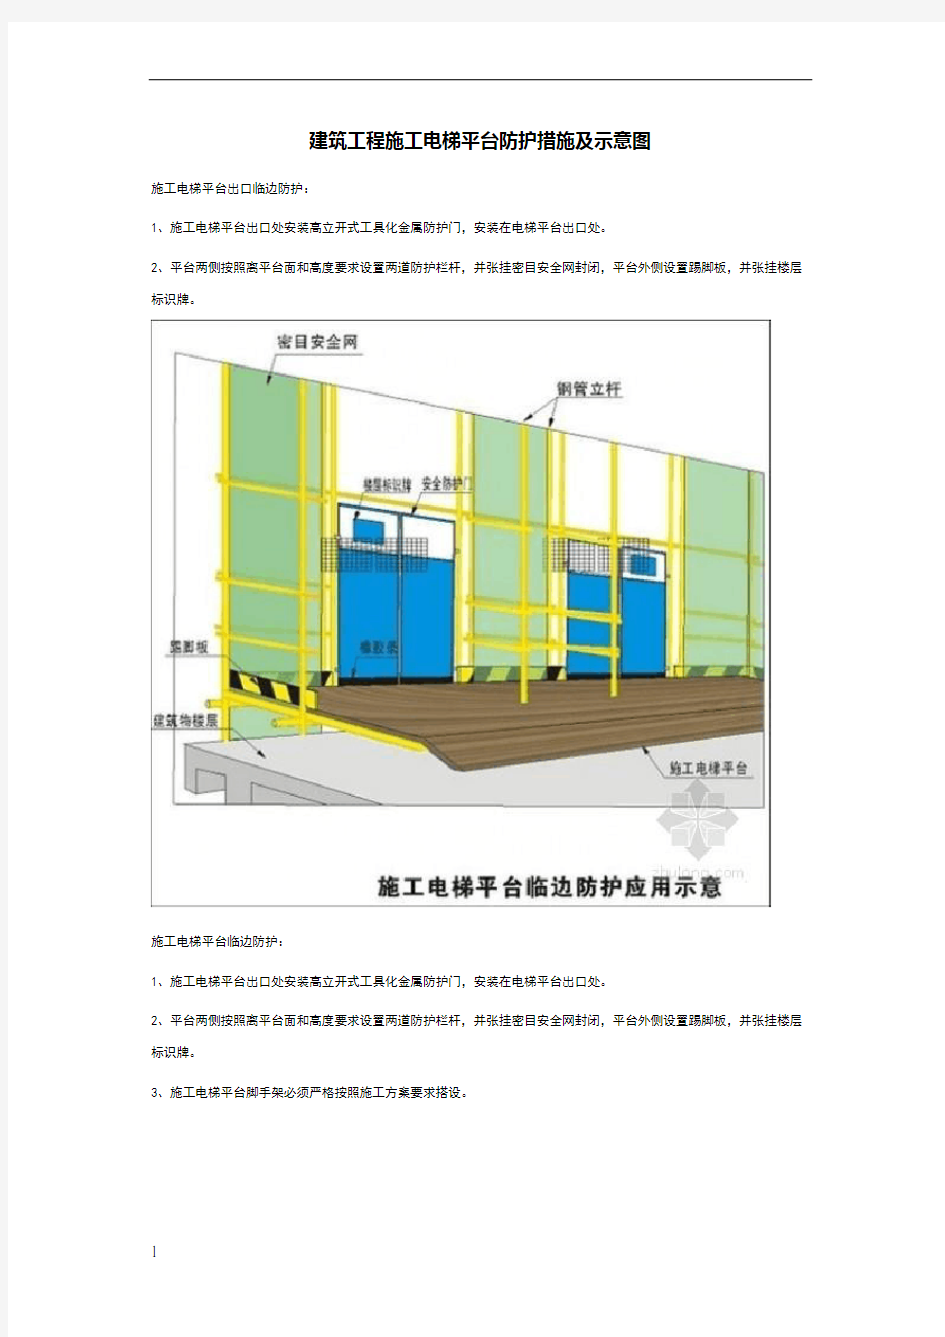 建筑工程施工电梯平台防护措施及示意图